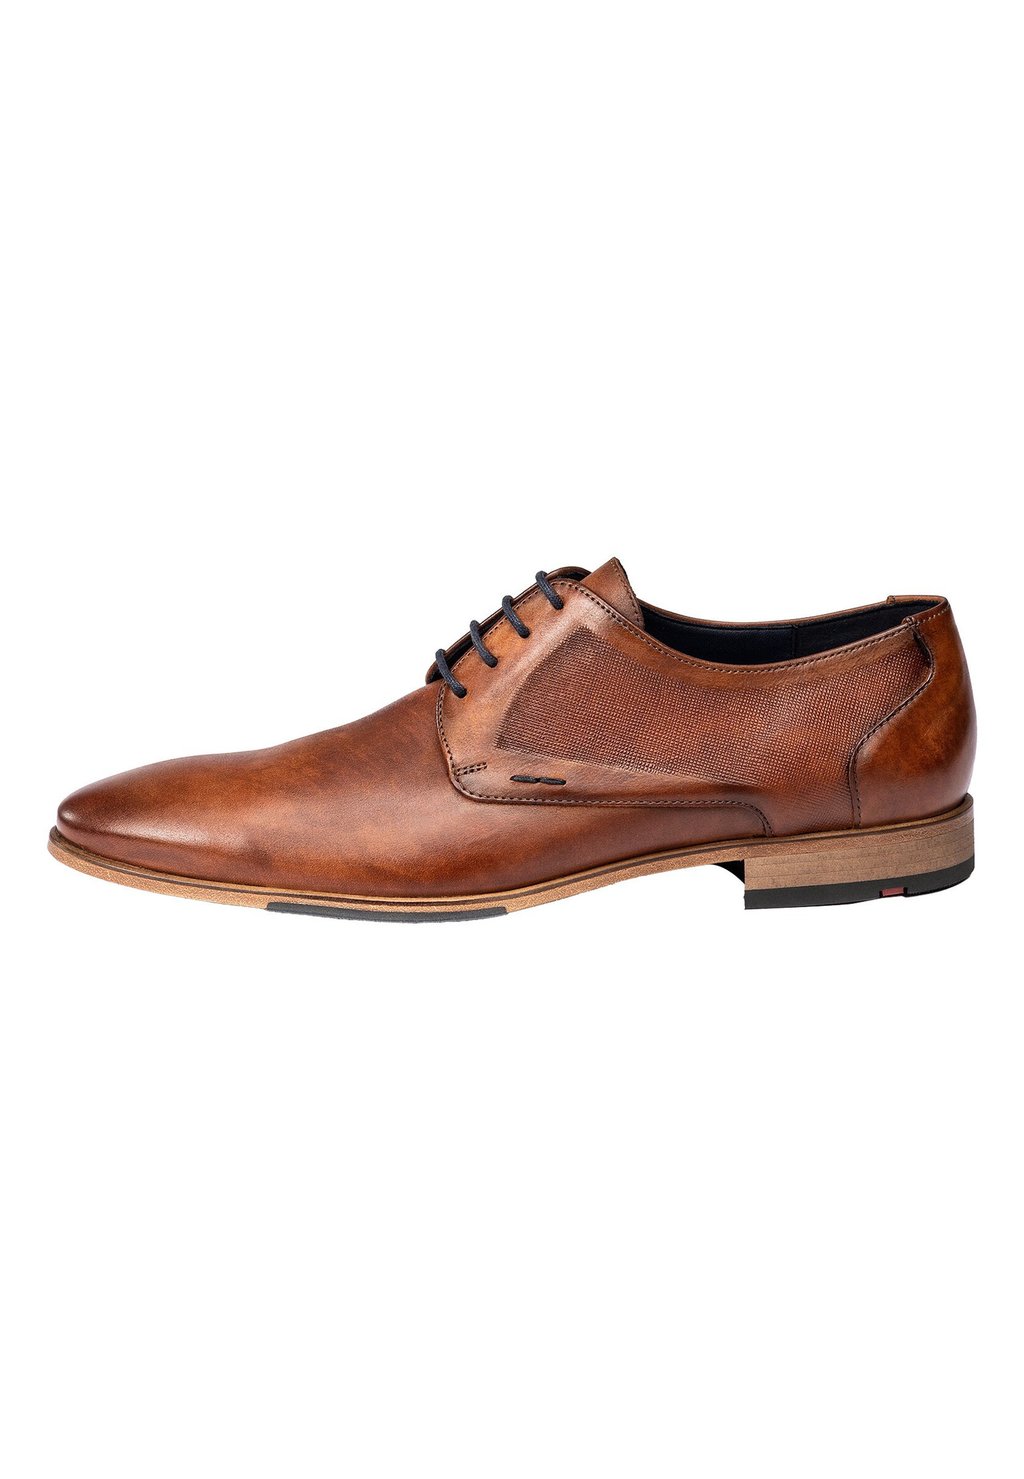 Элегантные туфли на шнуровке Galant Lloyd, коричневый элегантные туфли на шнуровке gabriel lloyd синий